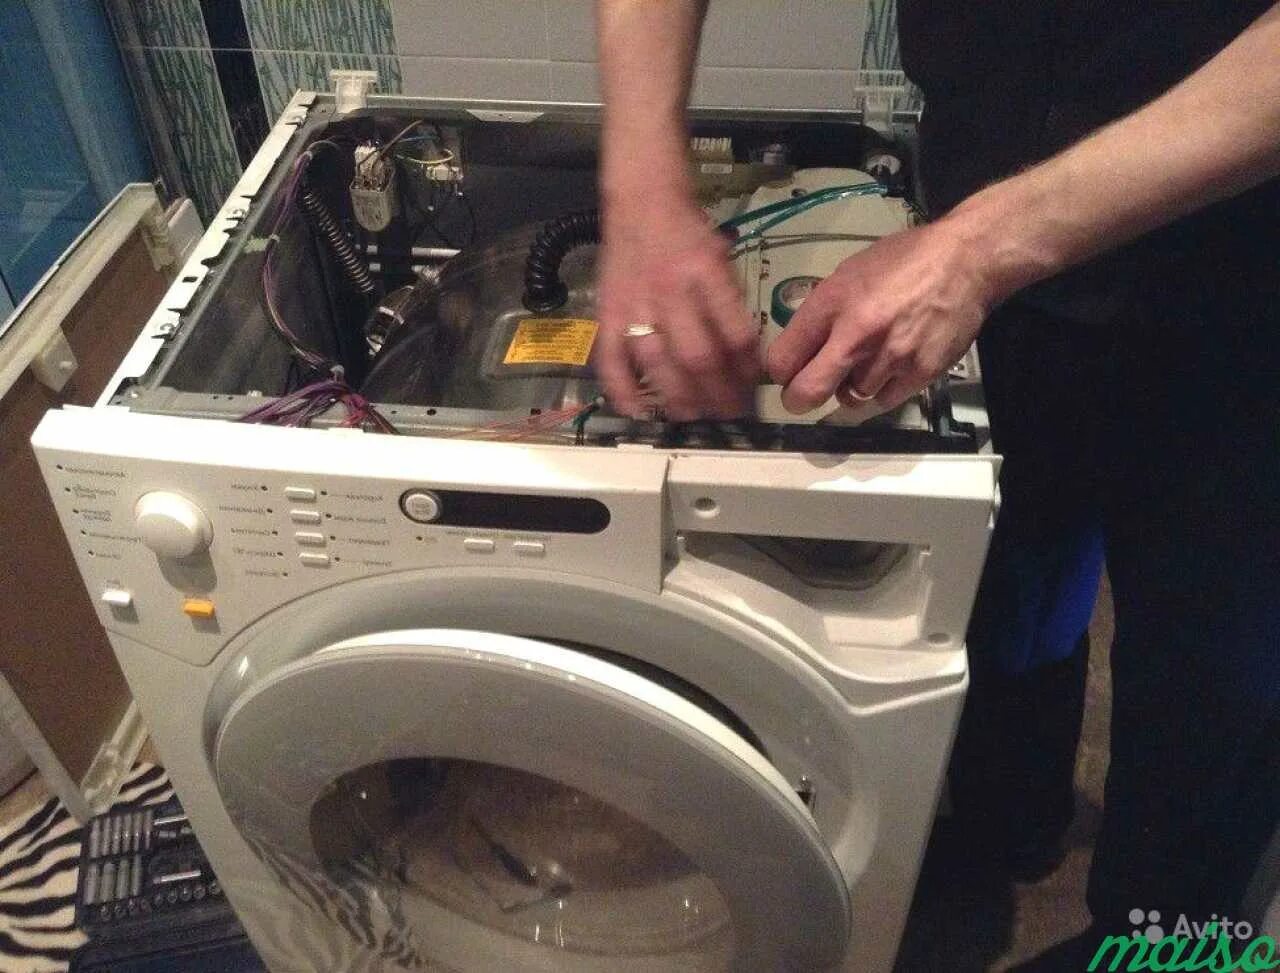 Ремонт стиральных машин. Мастер по ремонту стиральных машинок. Мастер по стиральным машинам. Сломалась стиральная машина.